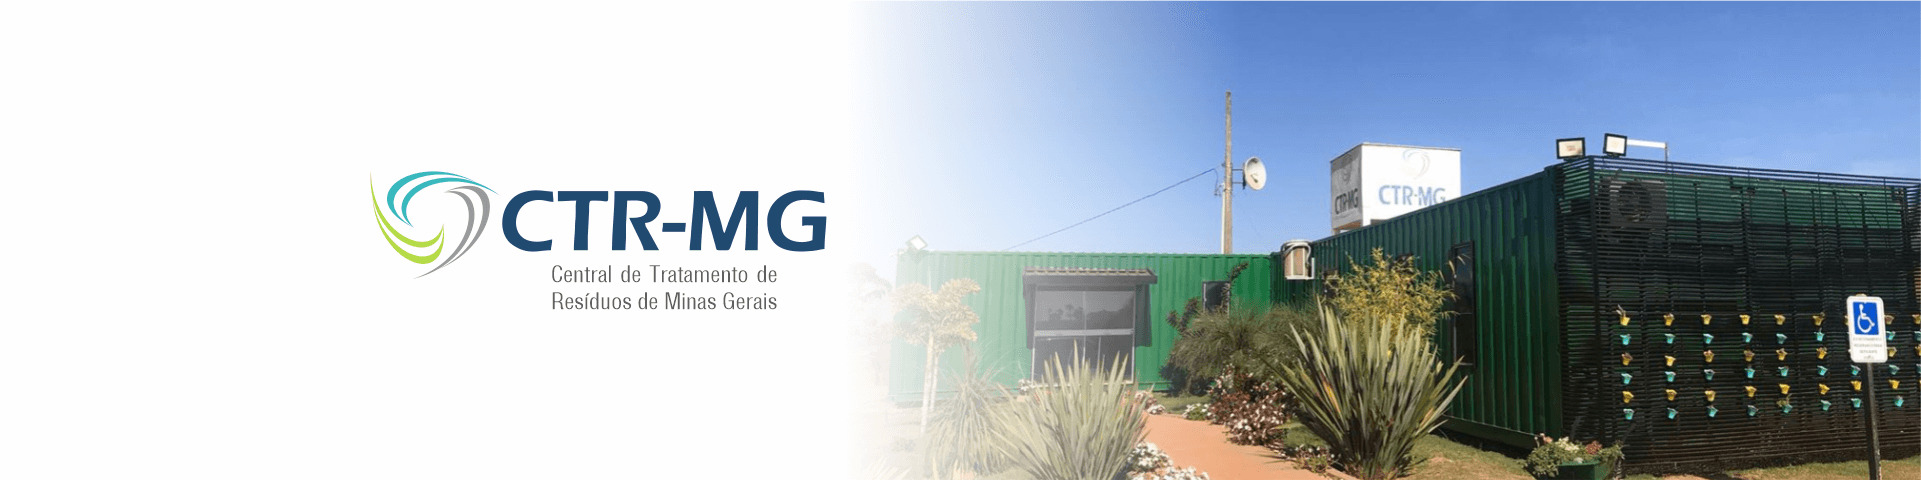 CTR-MG Central de tratamento de resíduos de Minas Gerais - Nepomuceno